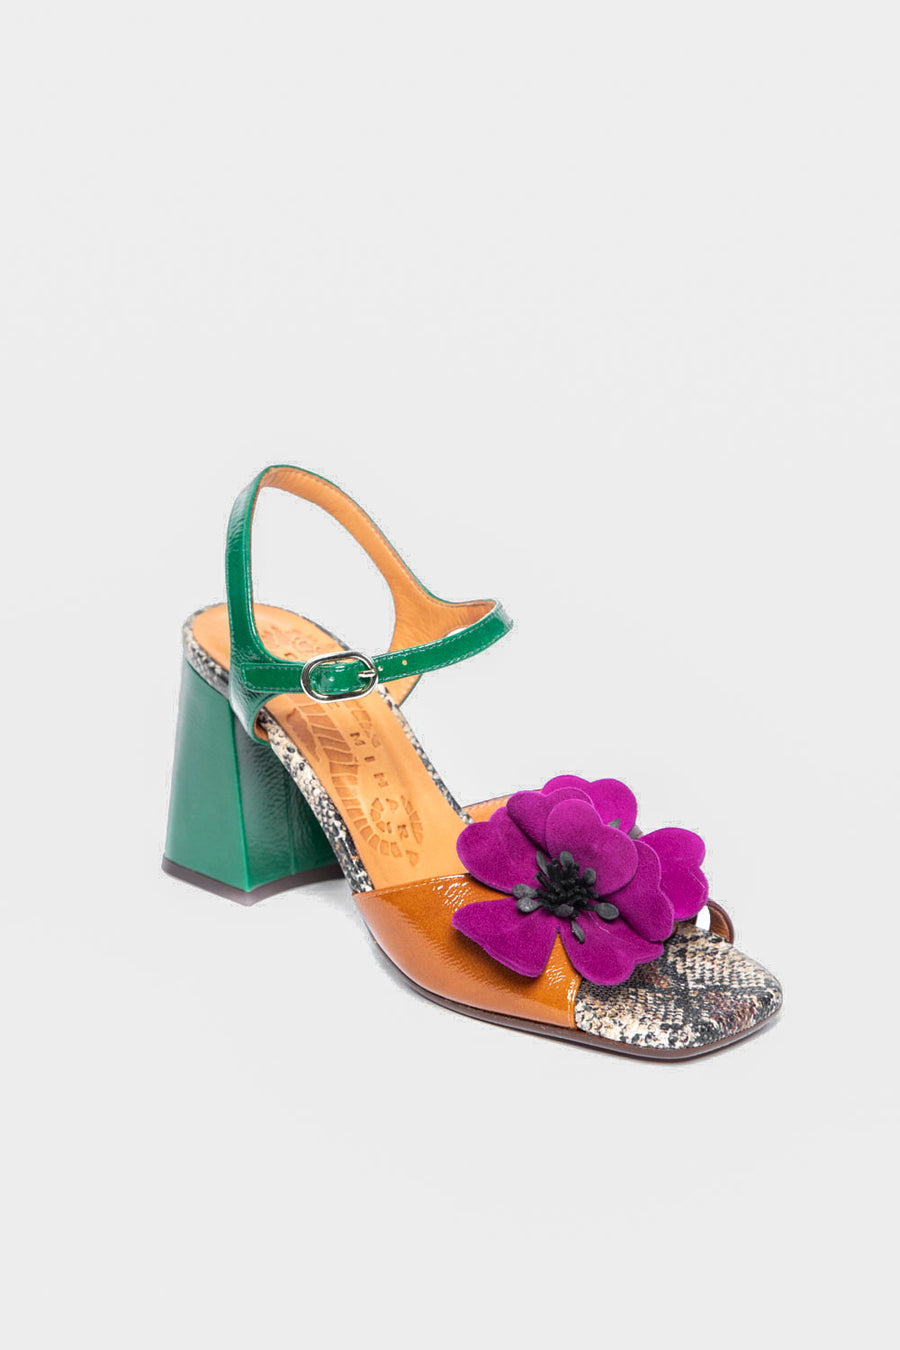 Sandalo Chie Mihara con fiore cuoio e verde pirota